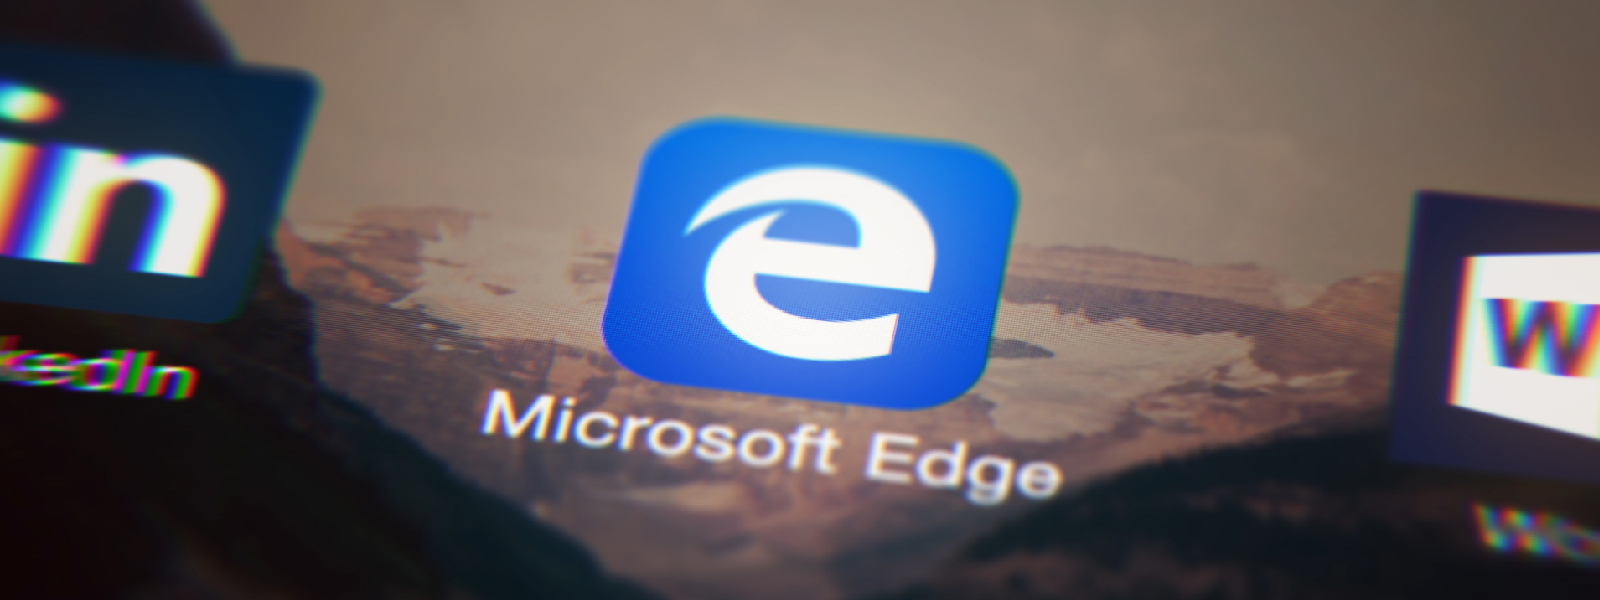 Traducir páginas al instante en la nueva actualización de Microsoft Edge para iOS